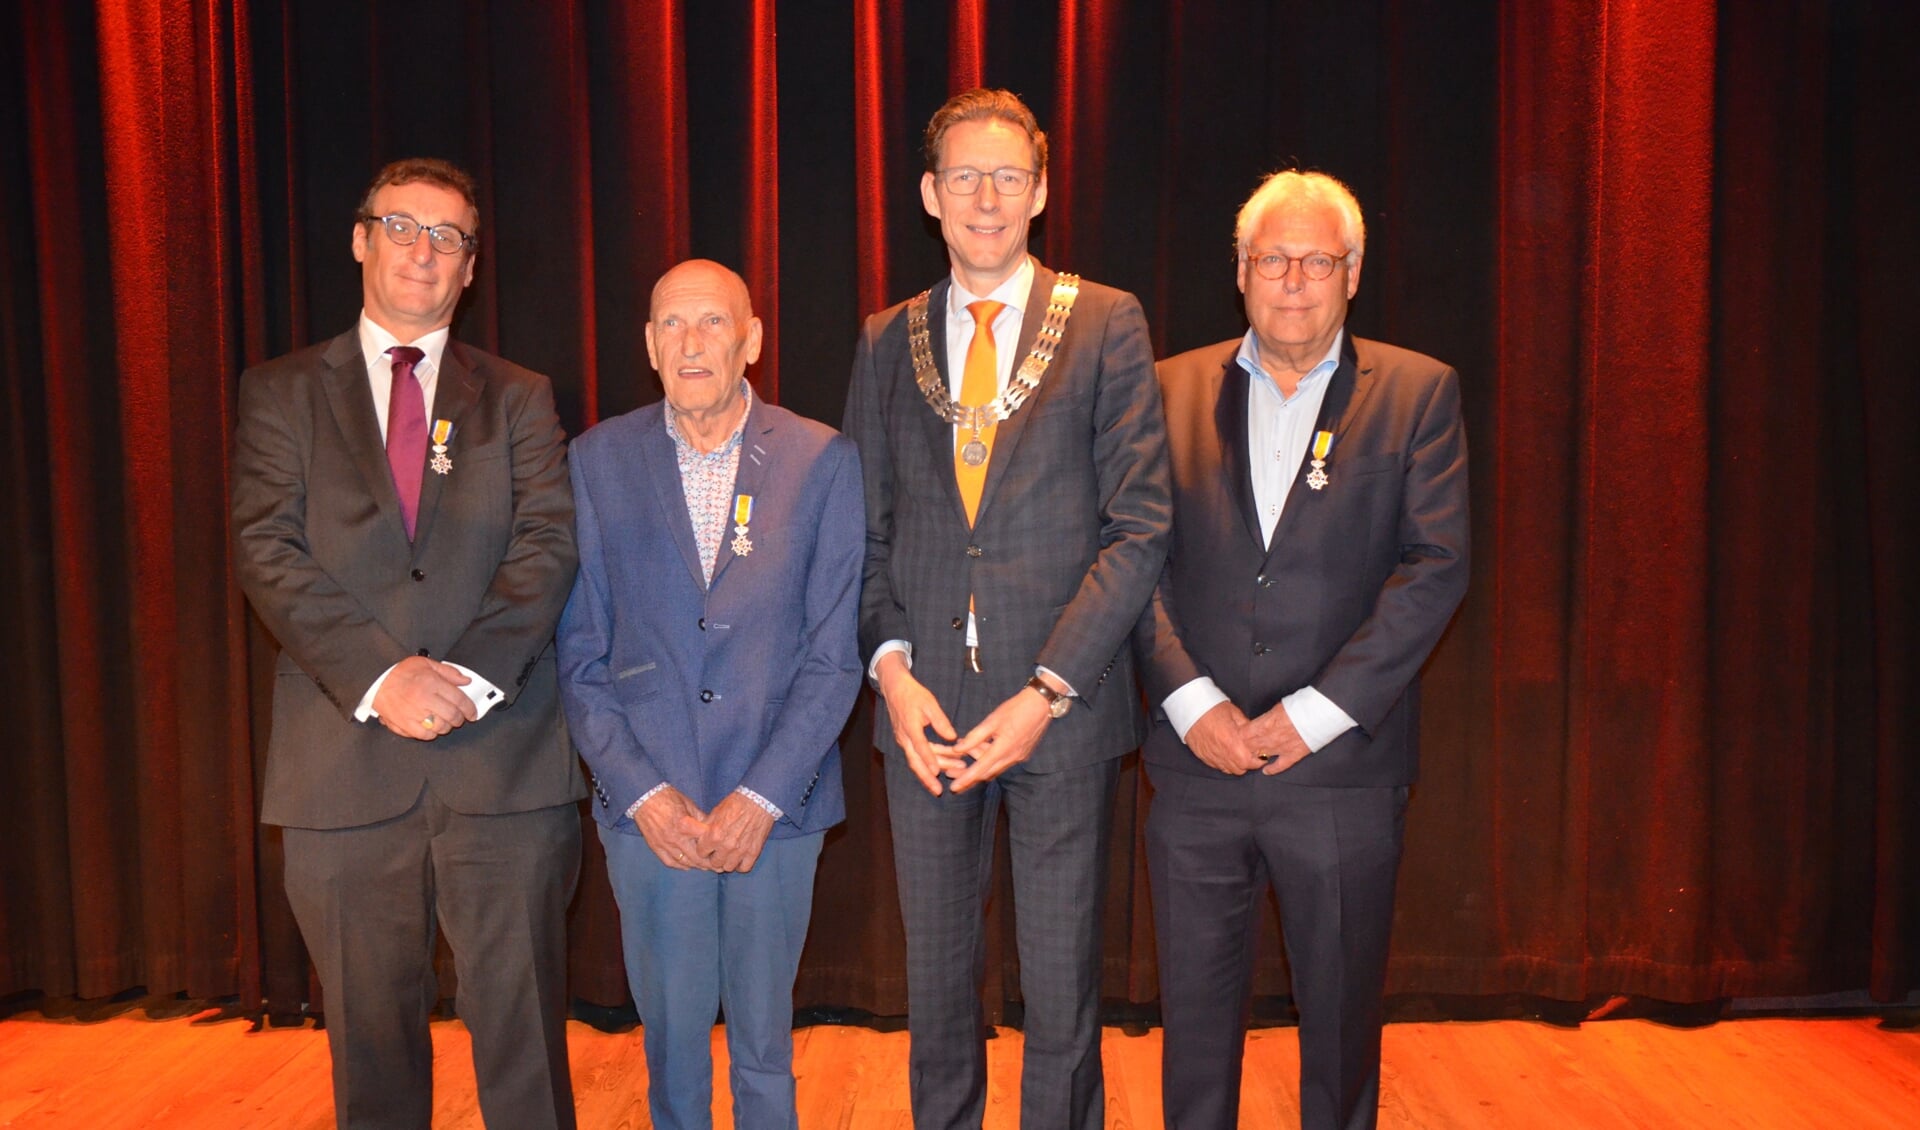 Peter Balvers, Wim van Dijk en Frans Hoving benoemd tot lid in de Orde van Oranje-Nassau